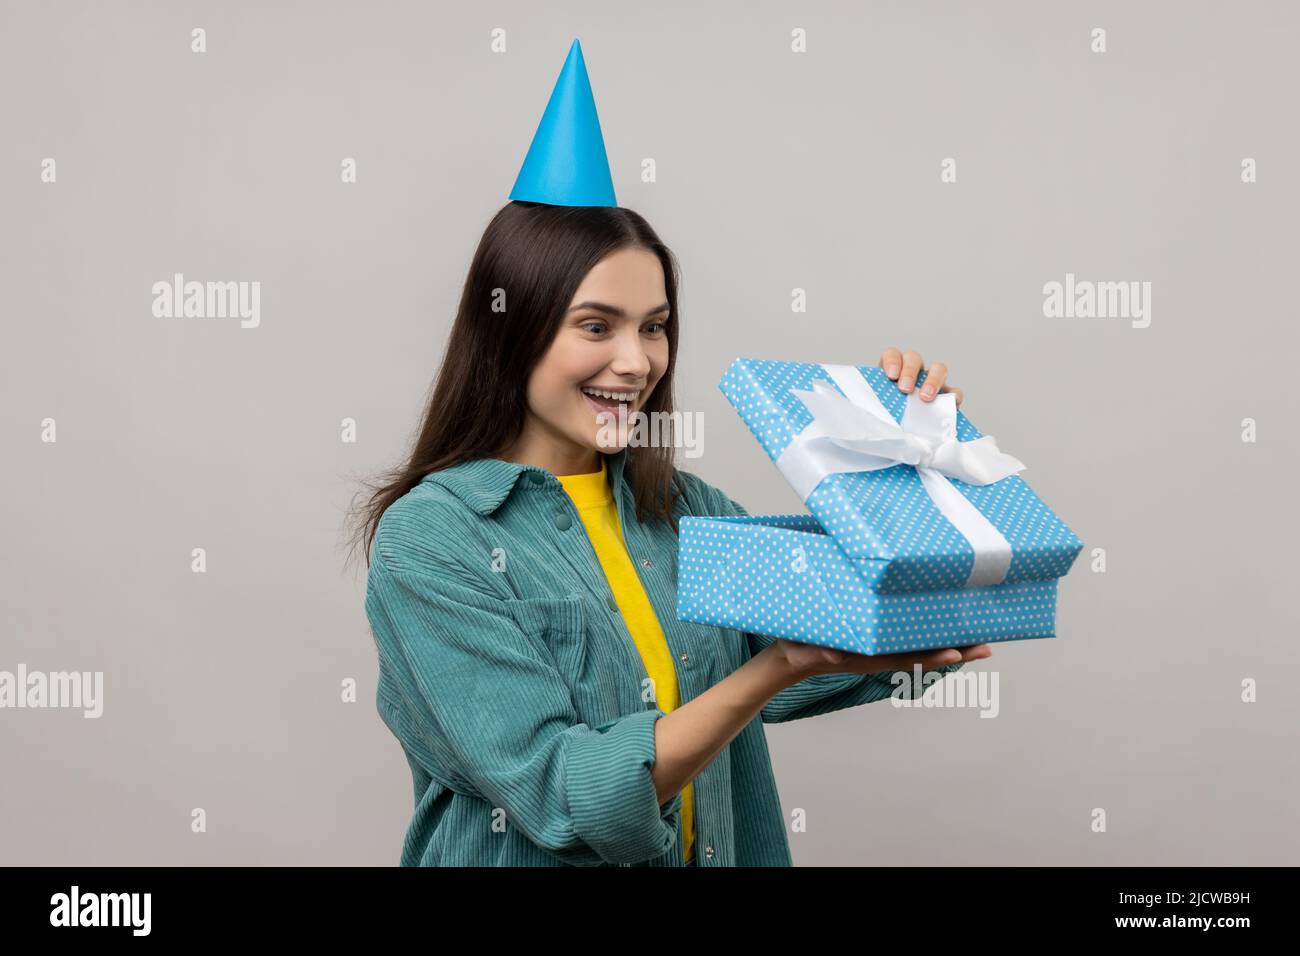 Porträt einer überraschten Frau mit Party-Kegel-Hut Blick in Geschenkbox, Eröffnung Geschenk und guckt nach innen mit glücklichen Lächeln, tragen lässigen Stil Jacke. Innenaufnahme des Studios isoliert auf grauem Hintergrund. Stockfoto